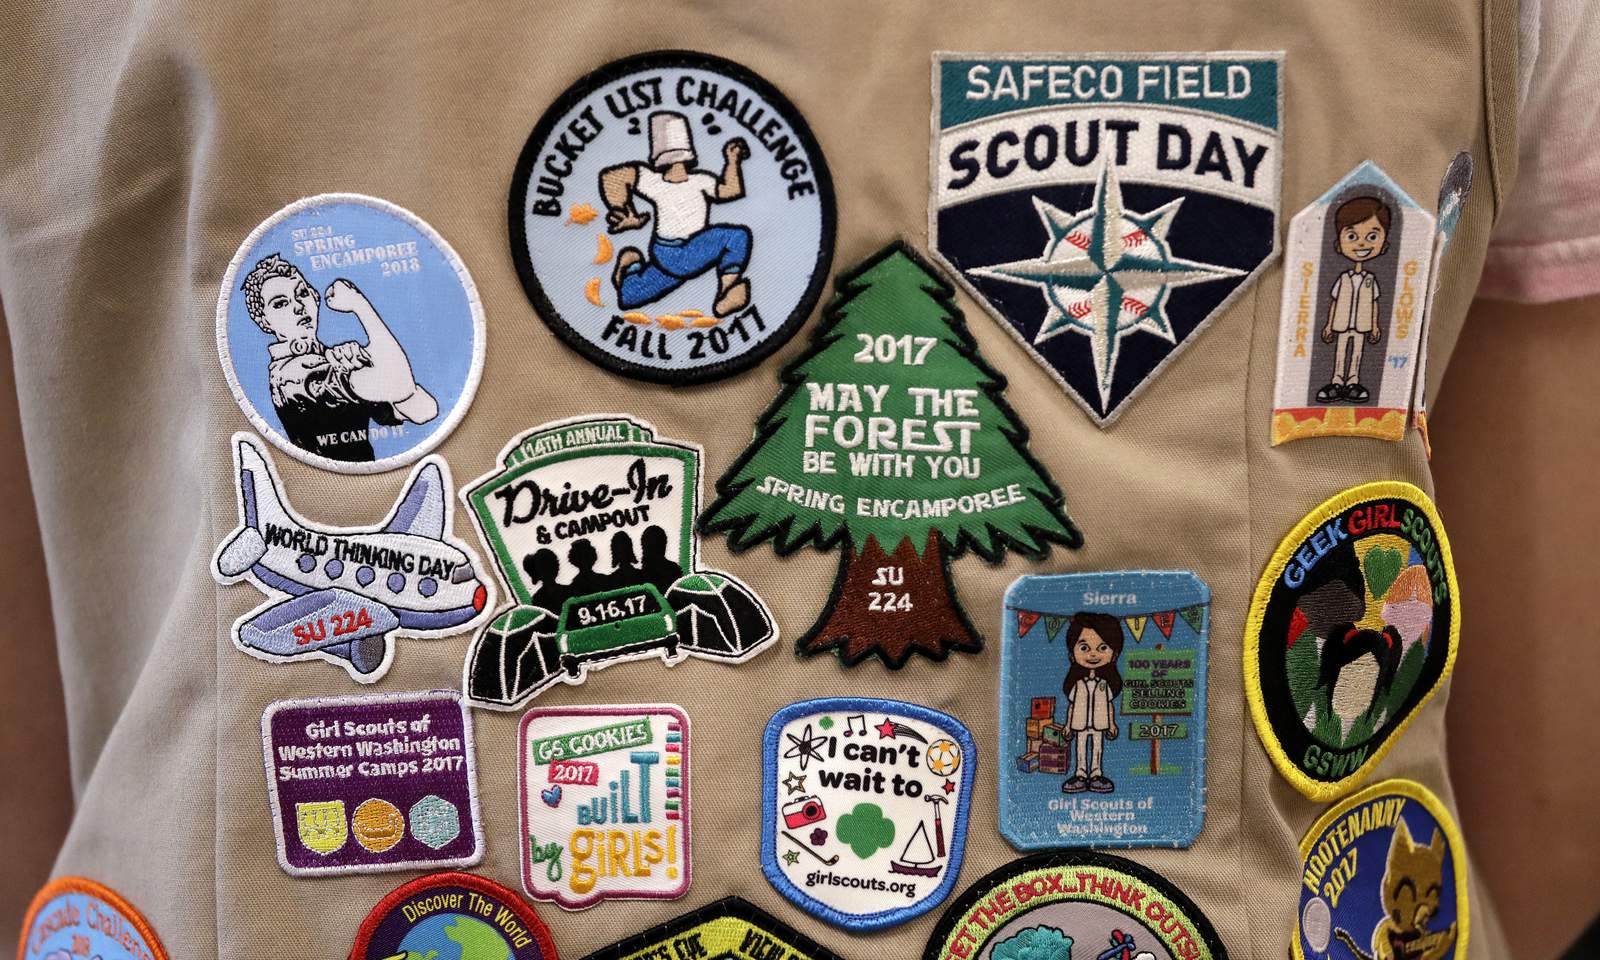 Girl Scouts rebuke Boy Scouts in escalating recruitment war